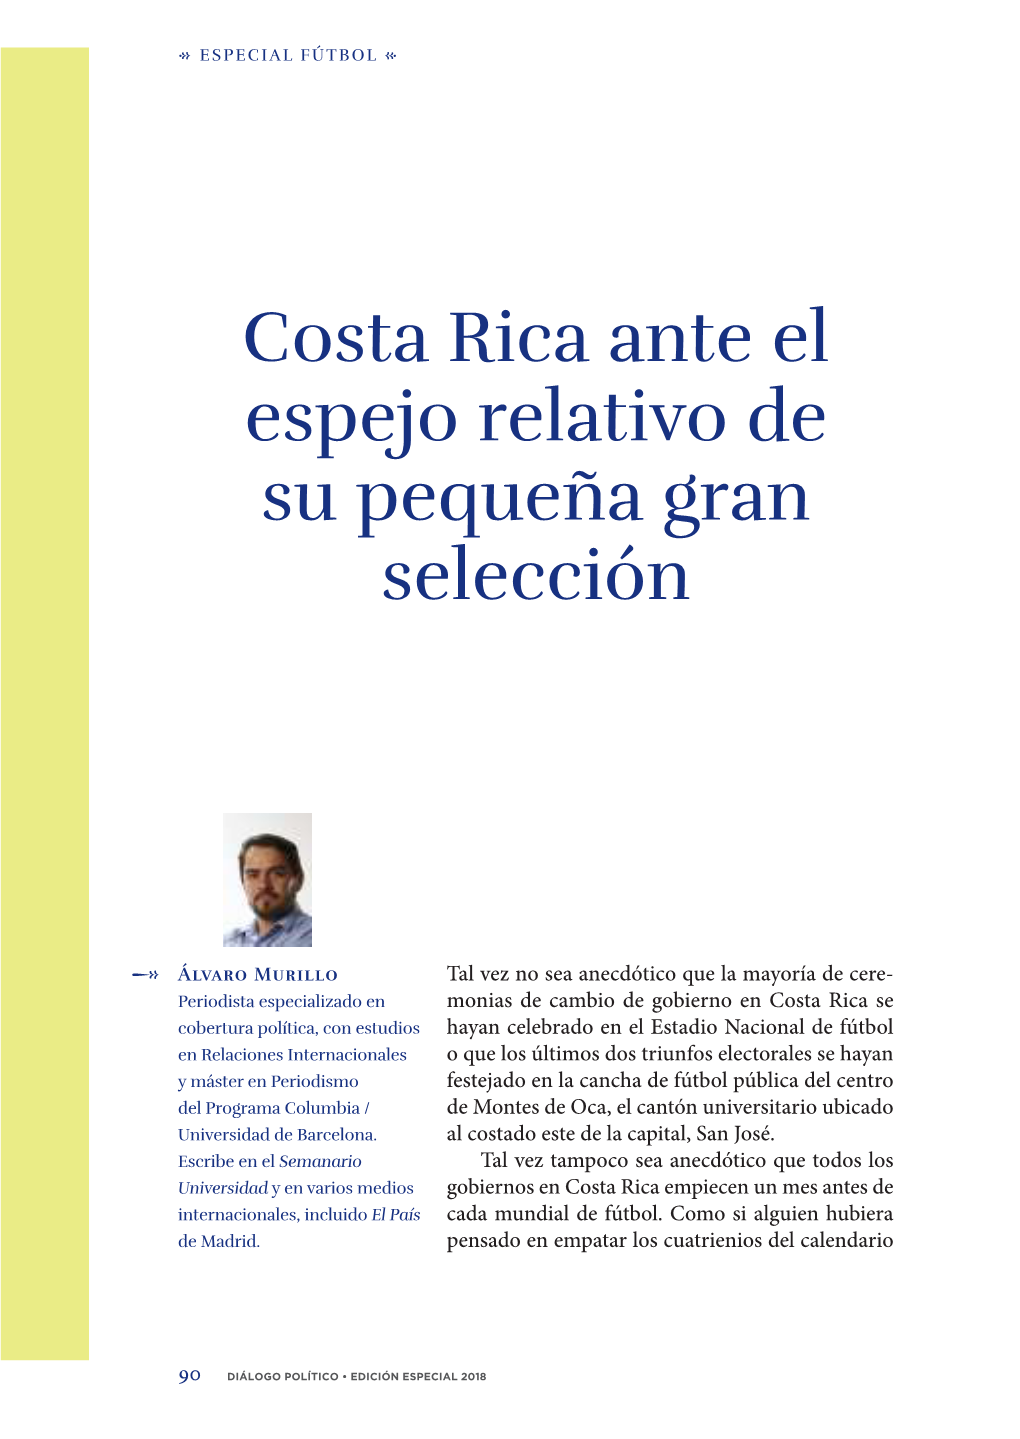 Costa Rica Ante El Espejo Relativo De Su Pequeña Gran Selección